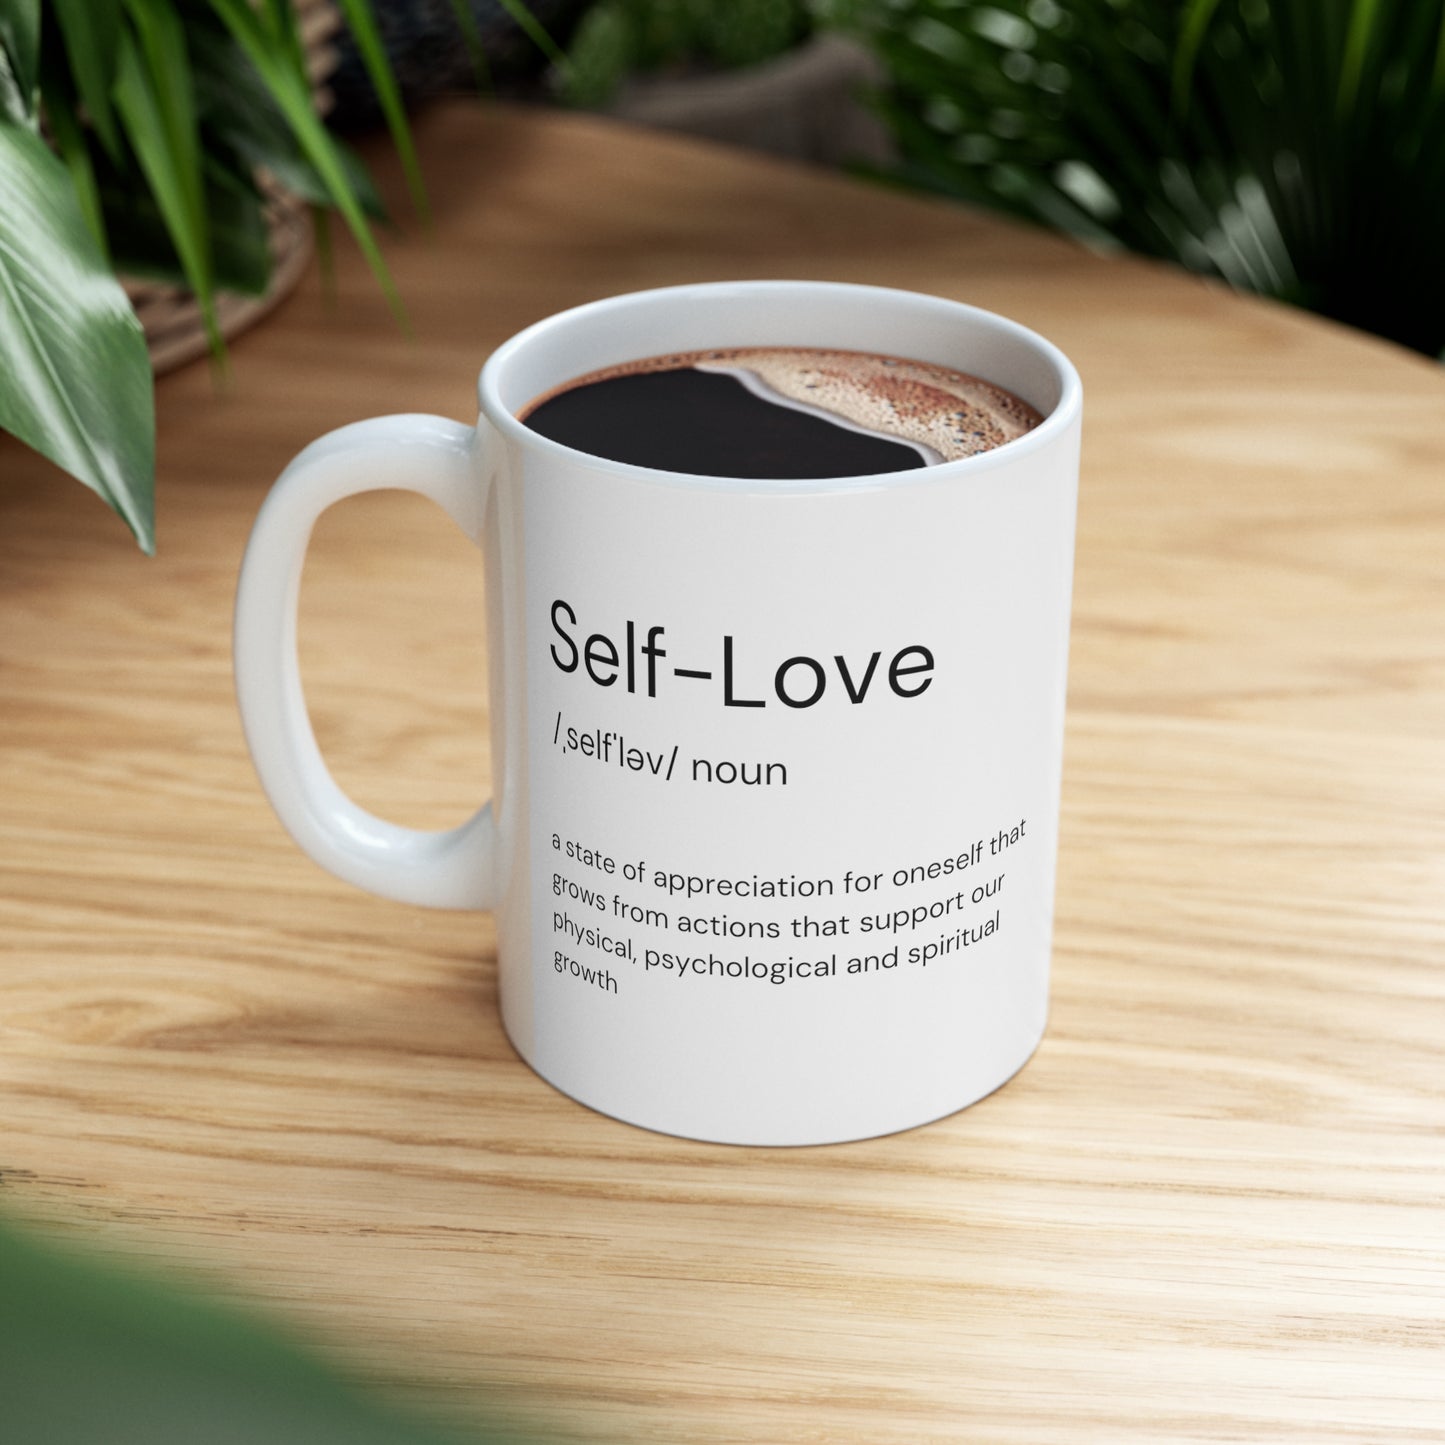 11oz Self-Love White Ceramic Mug